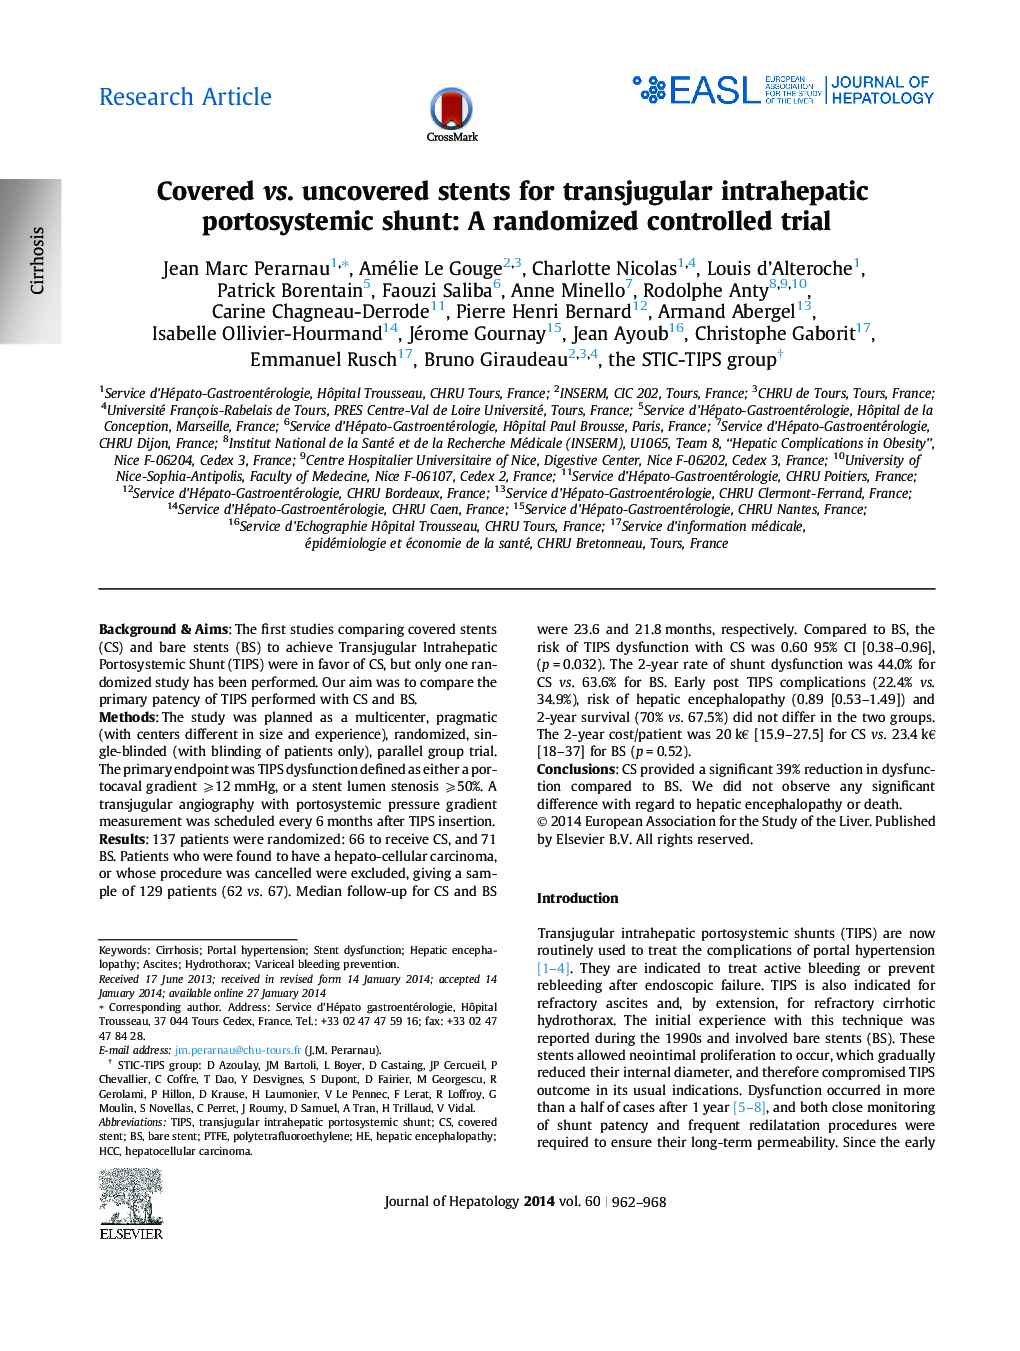 مقاله پژوهشی مقدمه در مقابل استنت های کشف نشده برای شنت های پورتوژئیک داخلجاوپیک ترجوغولار: یک کارآزمایی کنترل شده تصادفی 